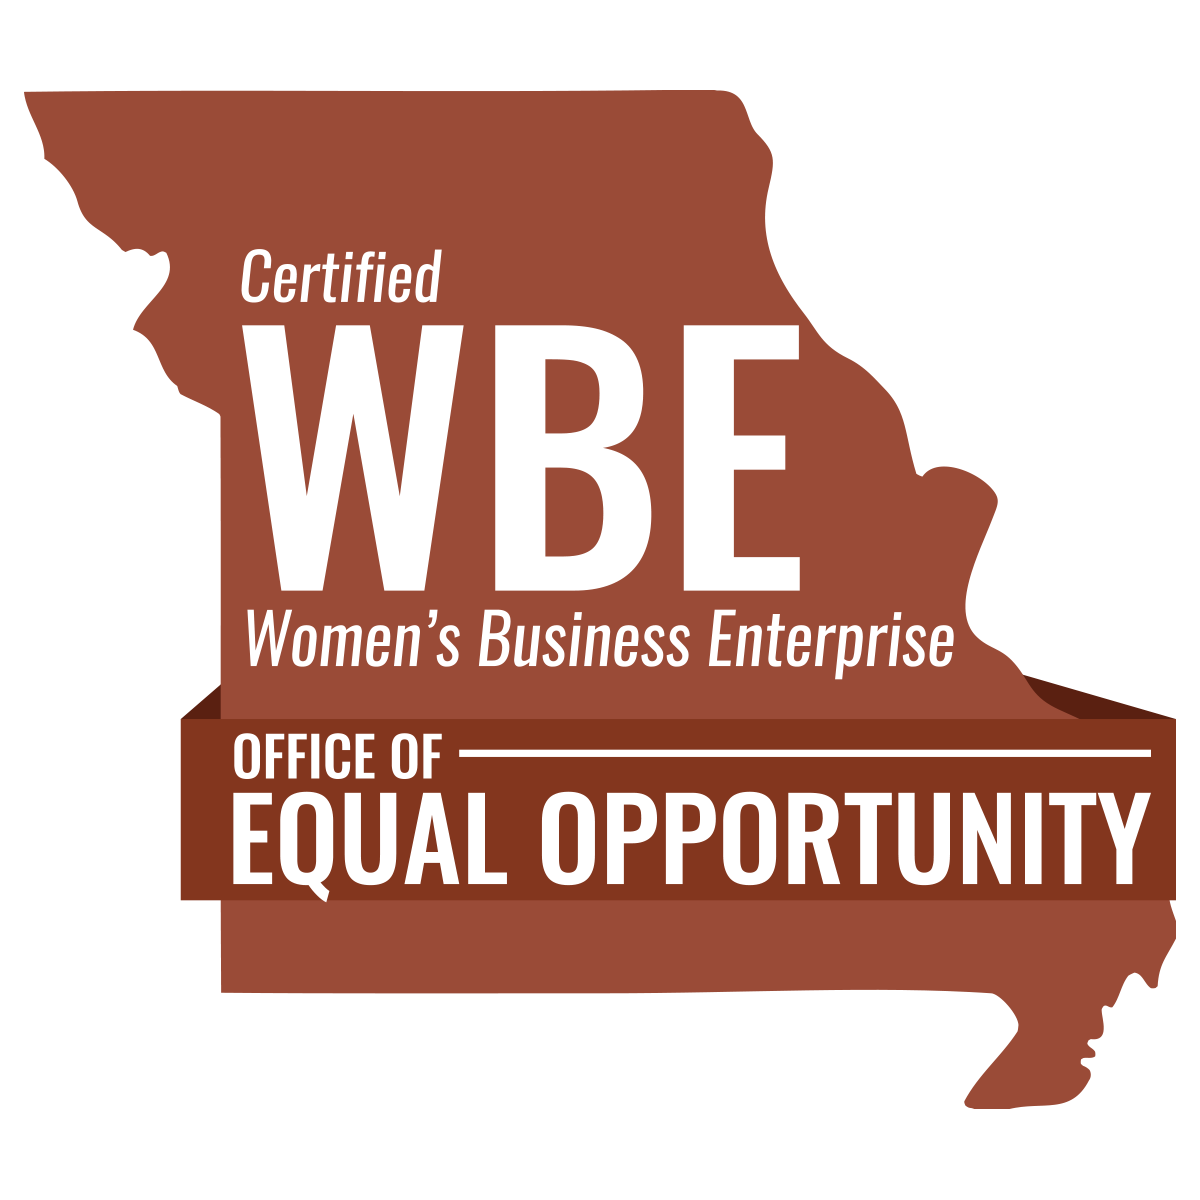 Certified Women’s Business Enterprise.